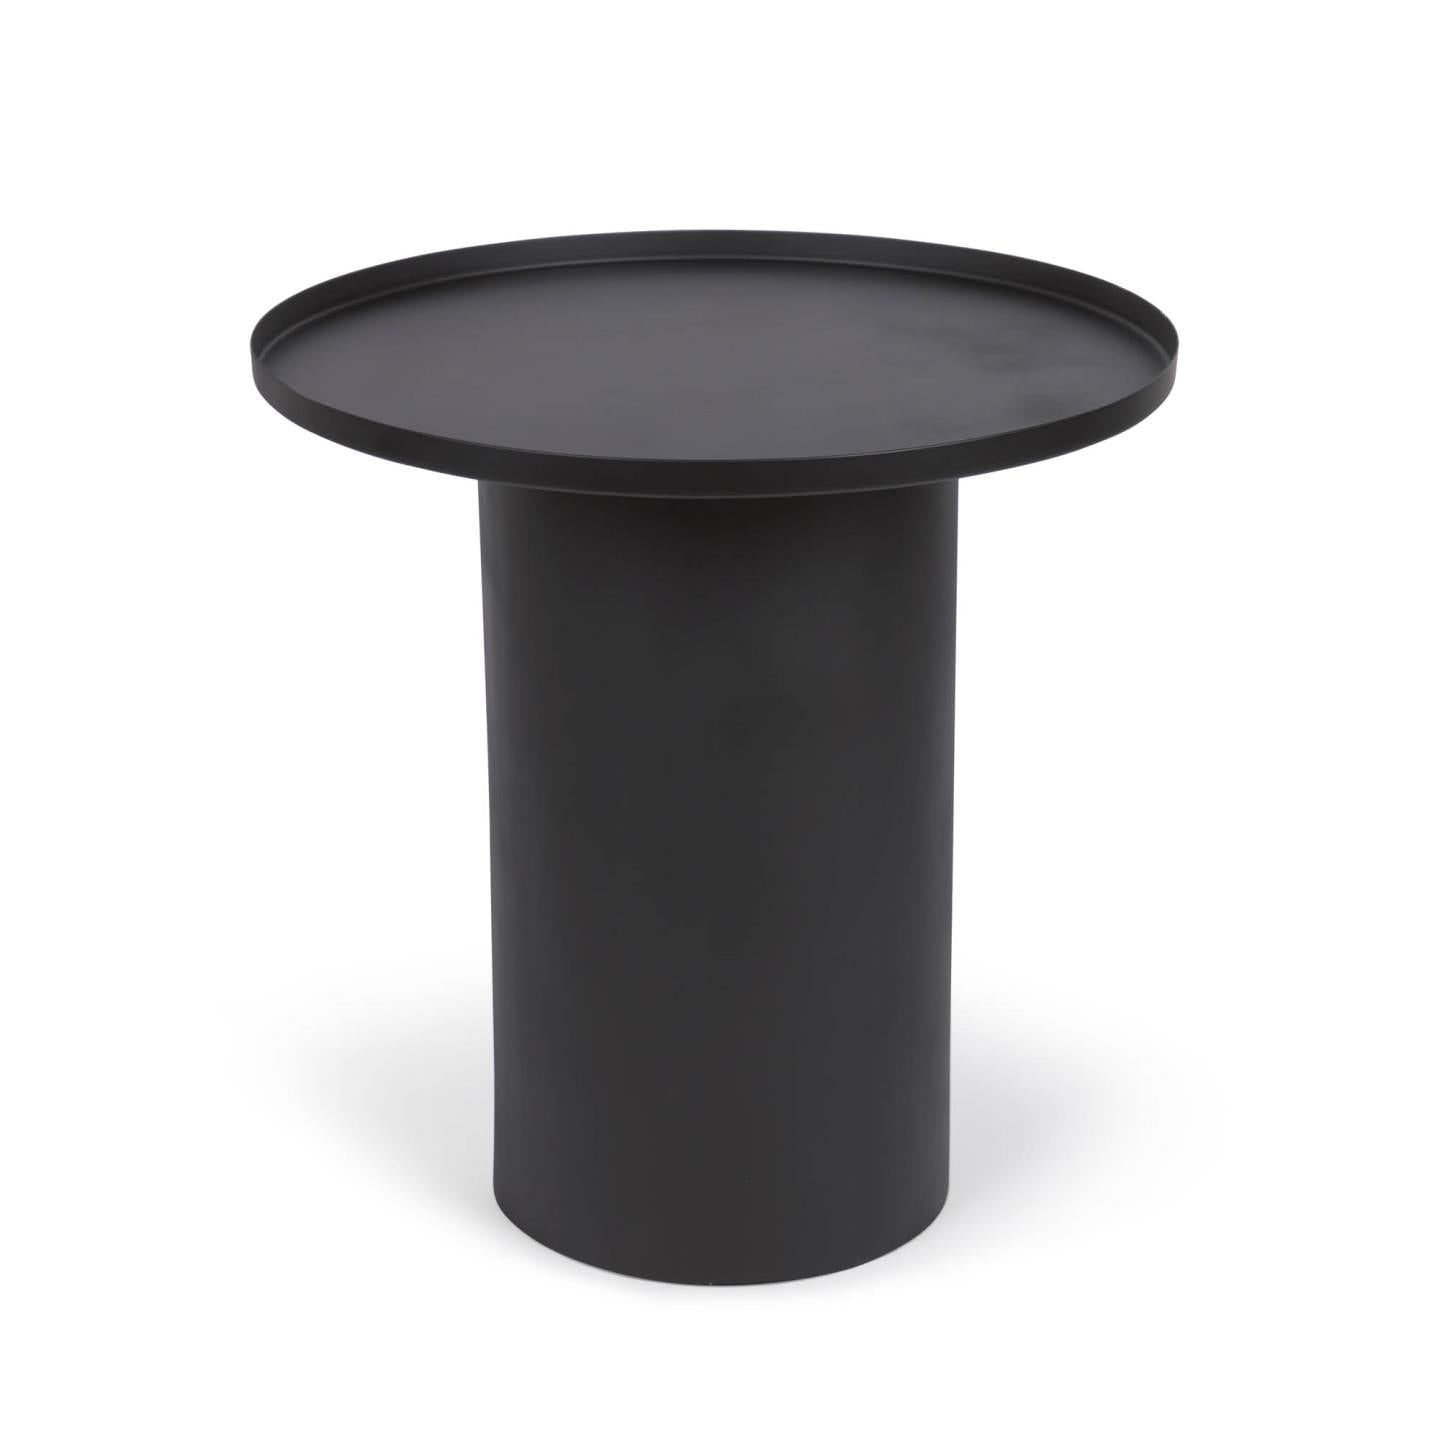 Kave Home Fleksa runder Beistelltisch aus Metall schwarz Ø 45 cm Schwarz-LH0159R01 #LH0159R01